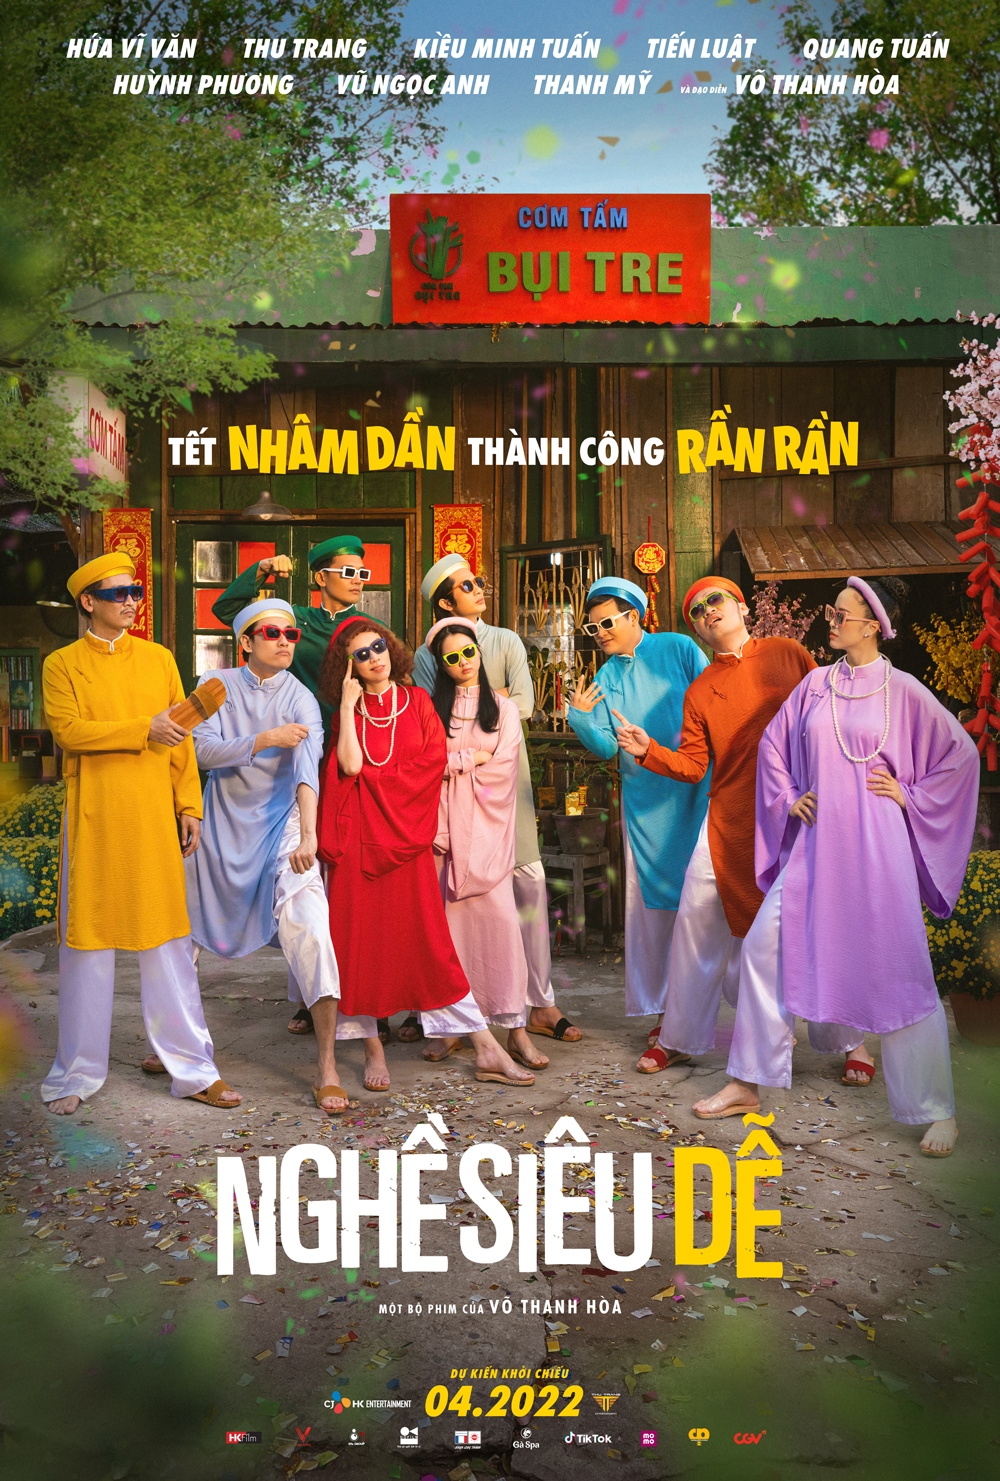 Thu Trang, Kiều Minh Tuấn mặc áo dài, tạo dáng cực ngầu trong poster "Nghề siêu dễ"